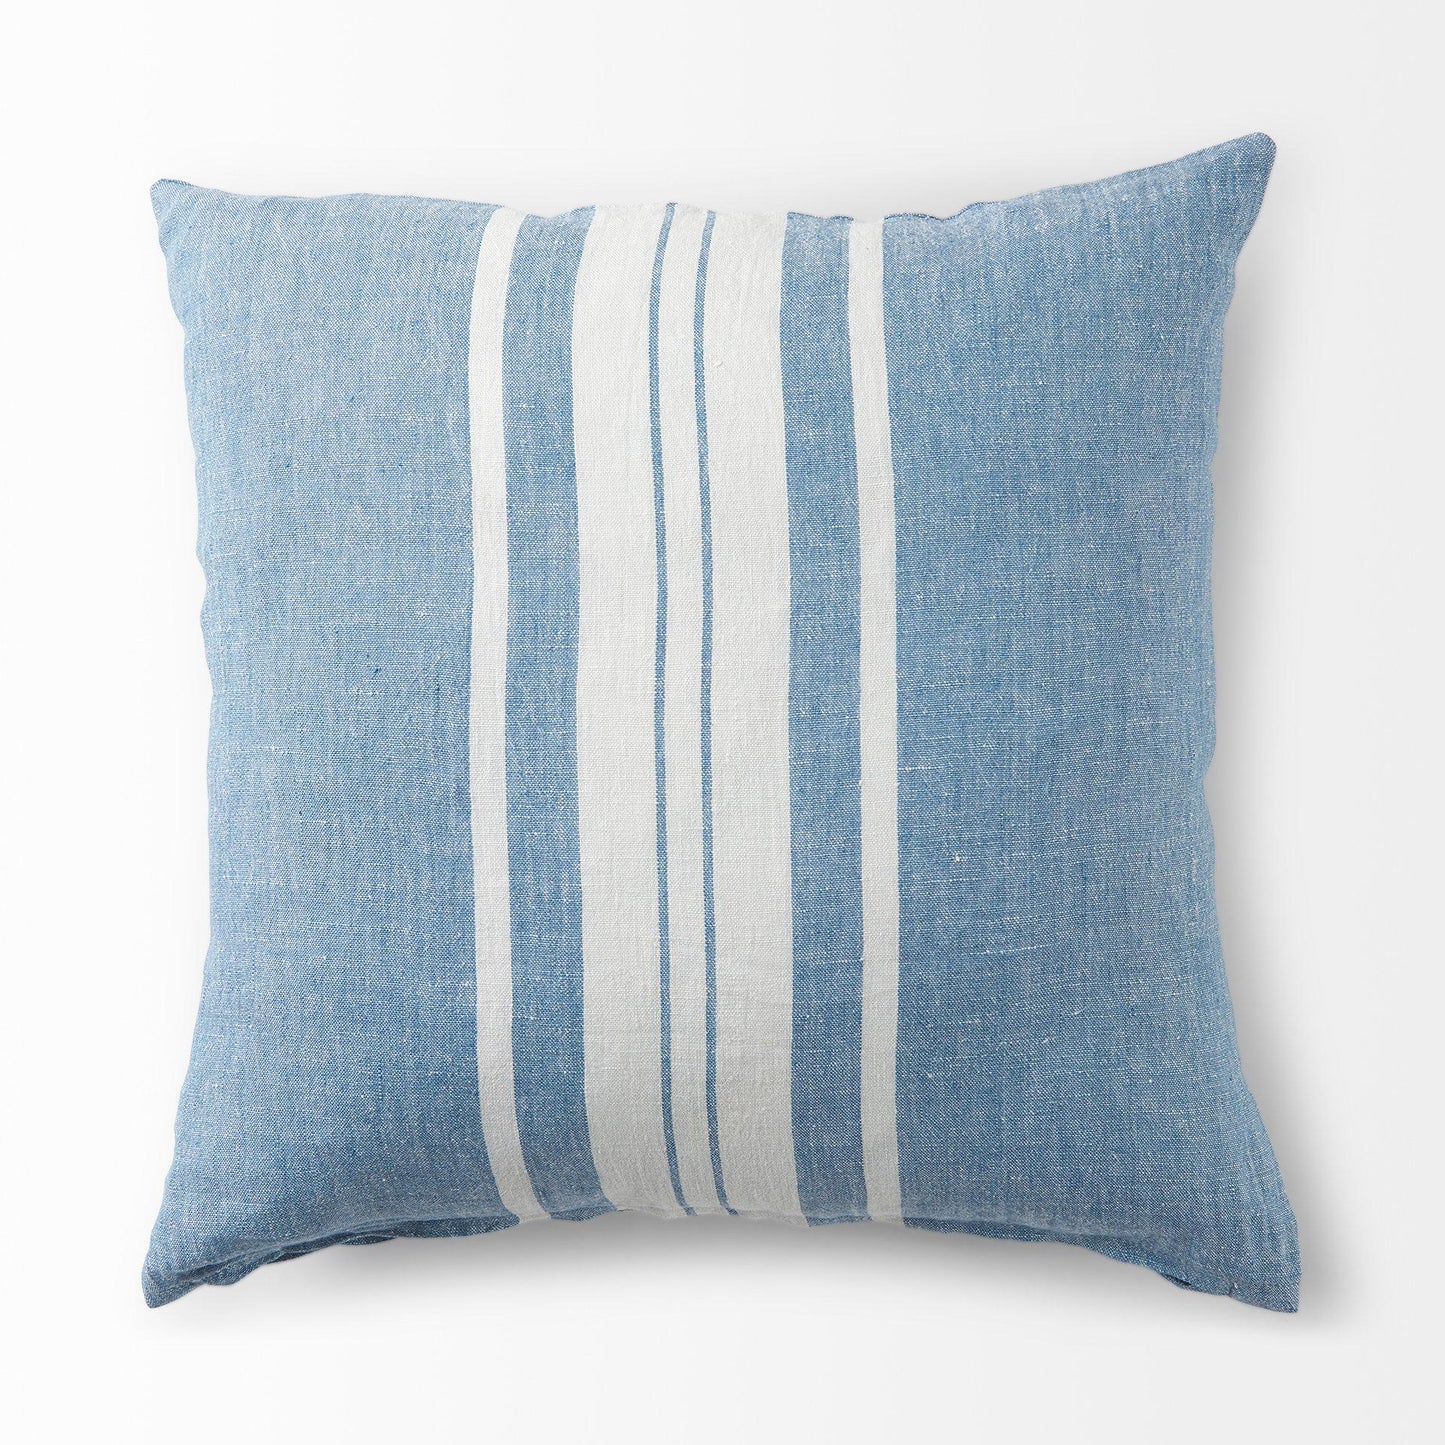 Brigitta 20L x 20W Blue and Cream Fabric Striped Decorative Pillow Cover